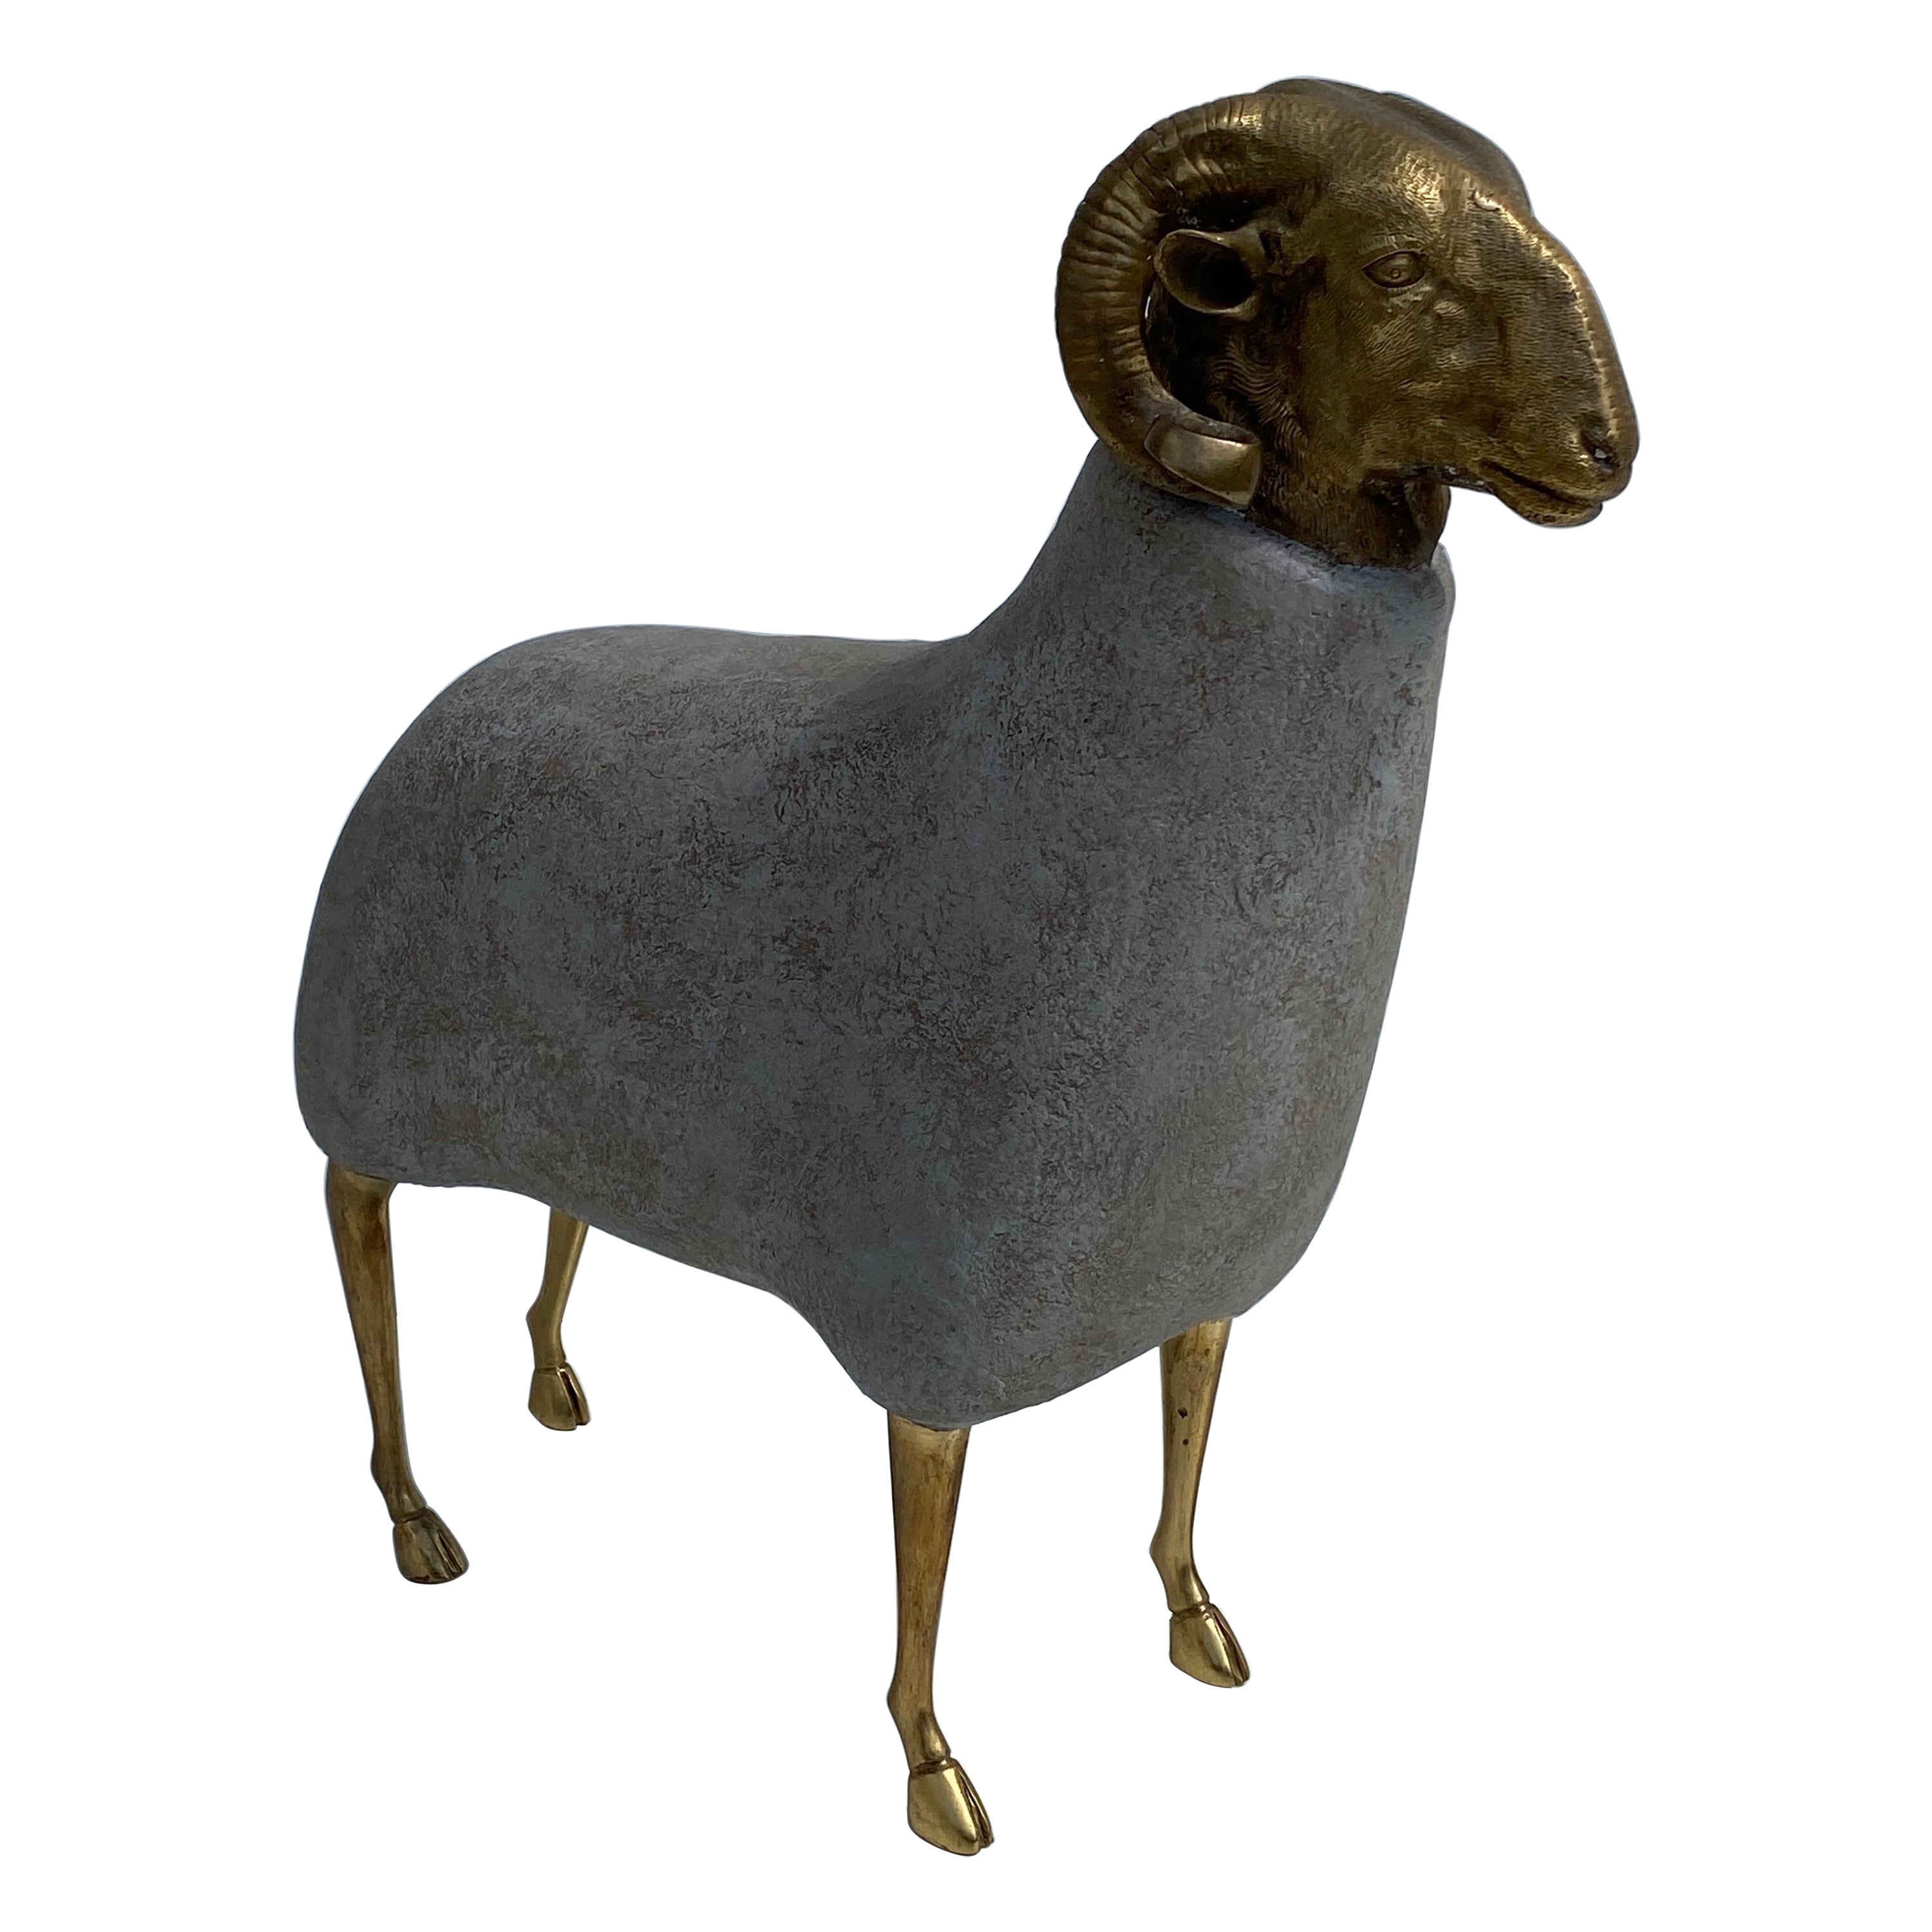 Brass Sheep Sculpture